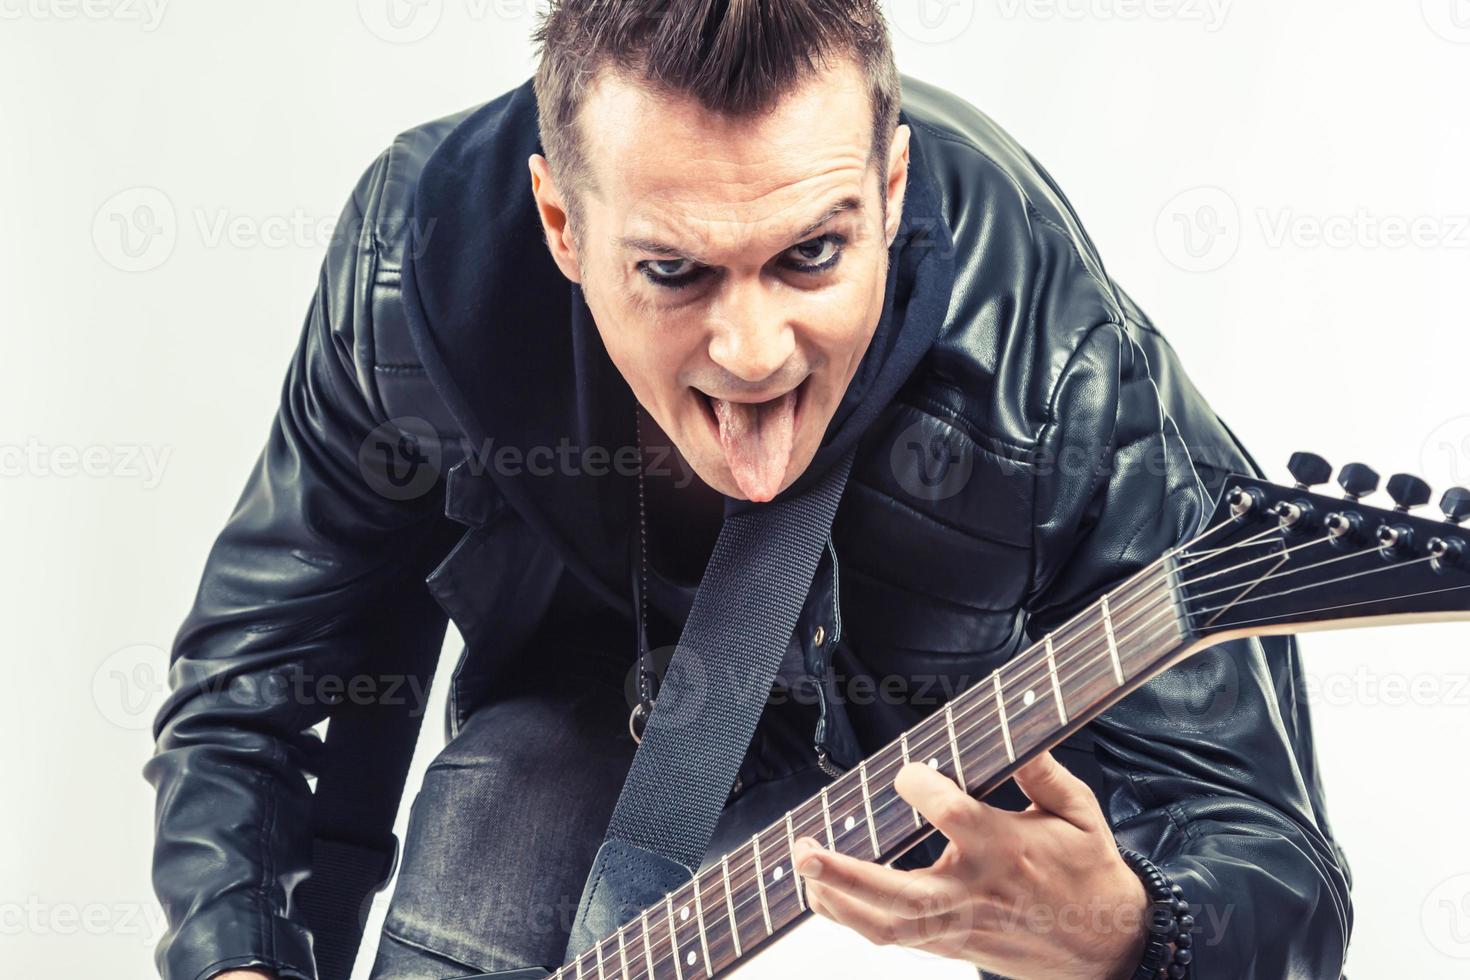 rebels musicus plakken uit tong terwijl spelen elektrisch gitaar. foto